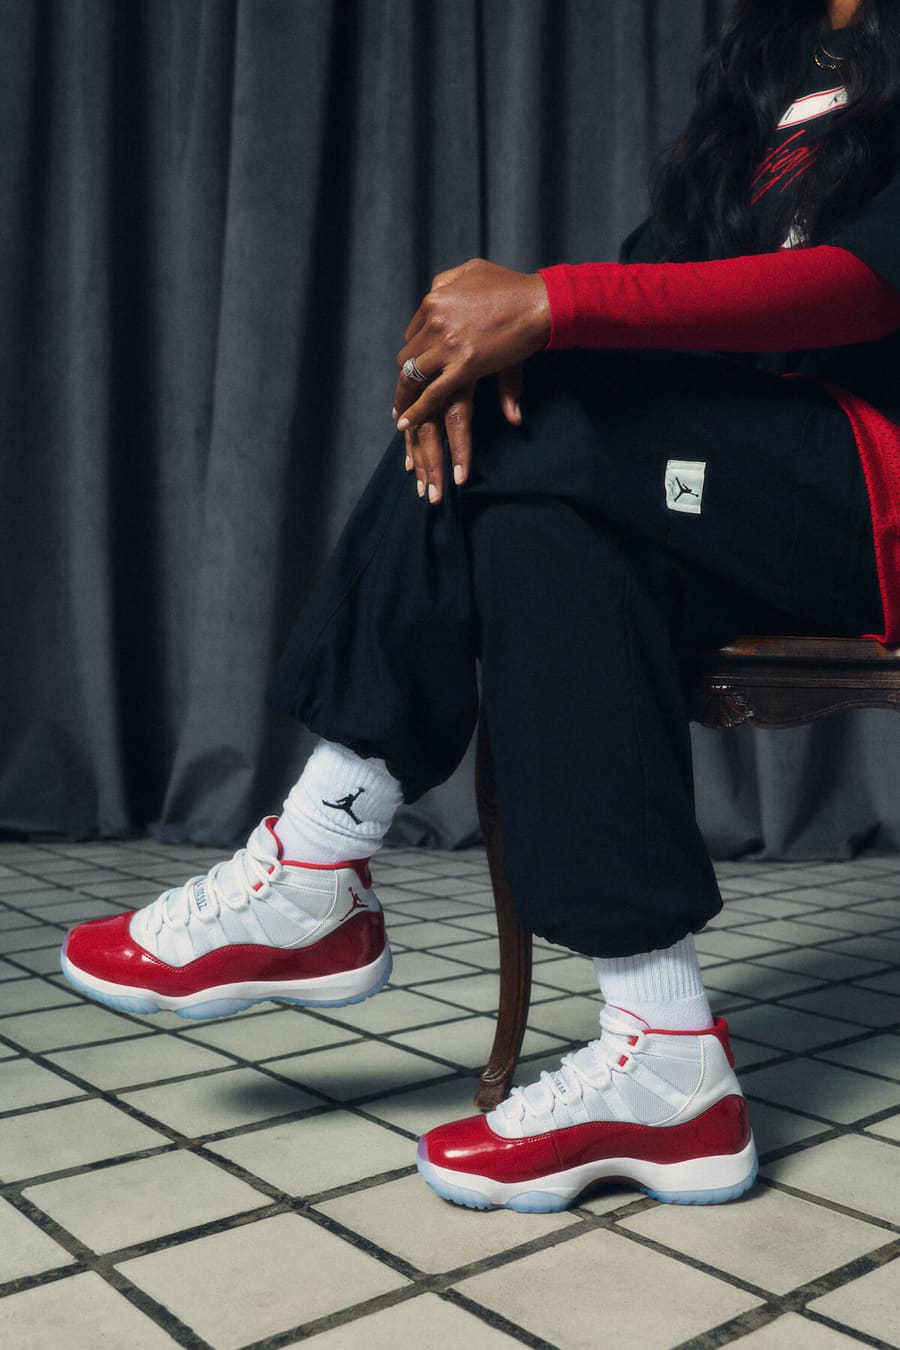 Competencia comienzo traición El Air Jordan 11 llega en color "Varsity Red". Nike